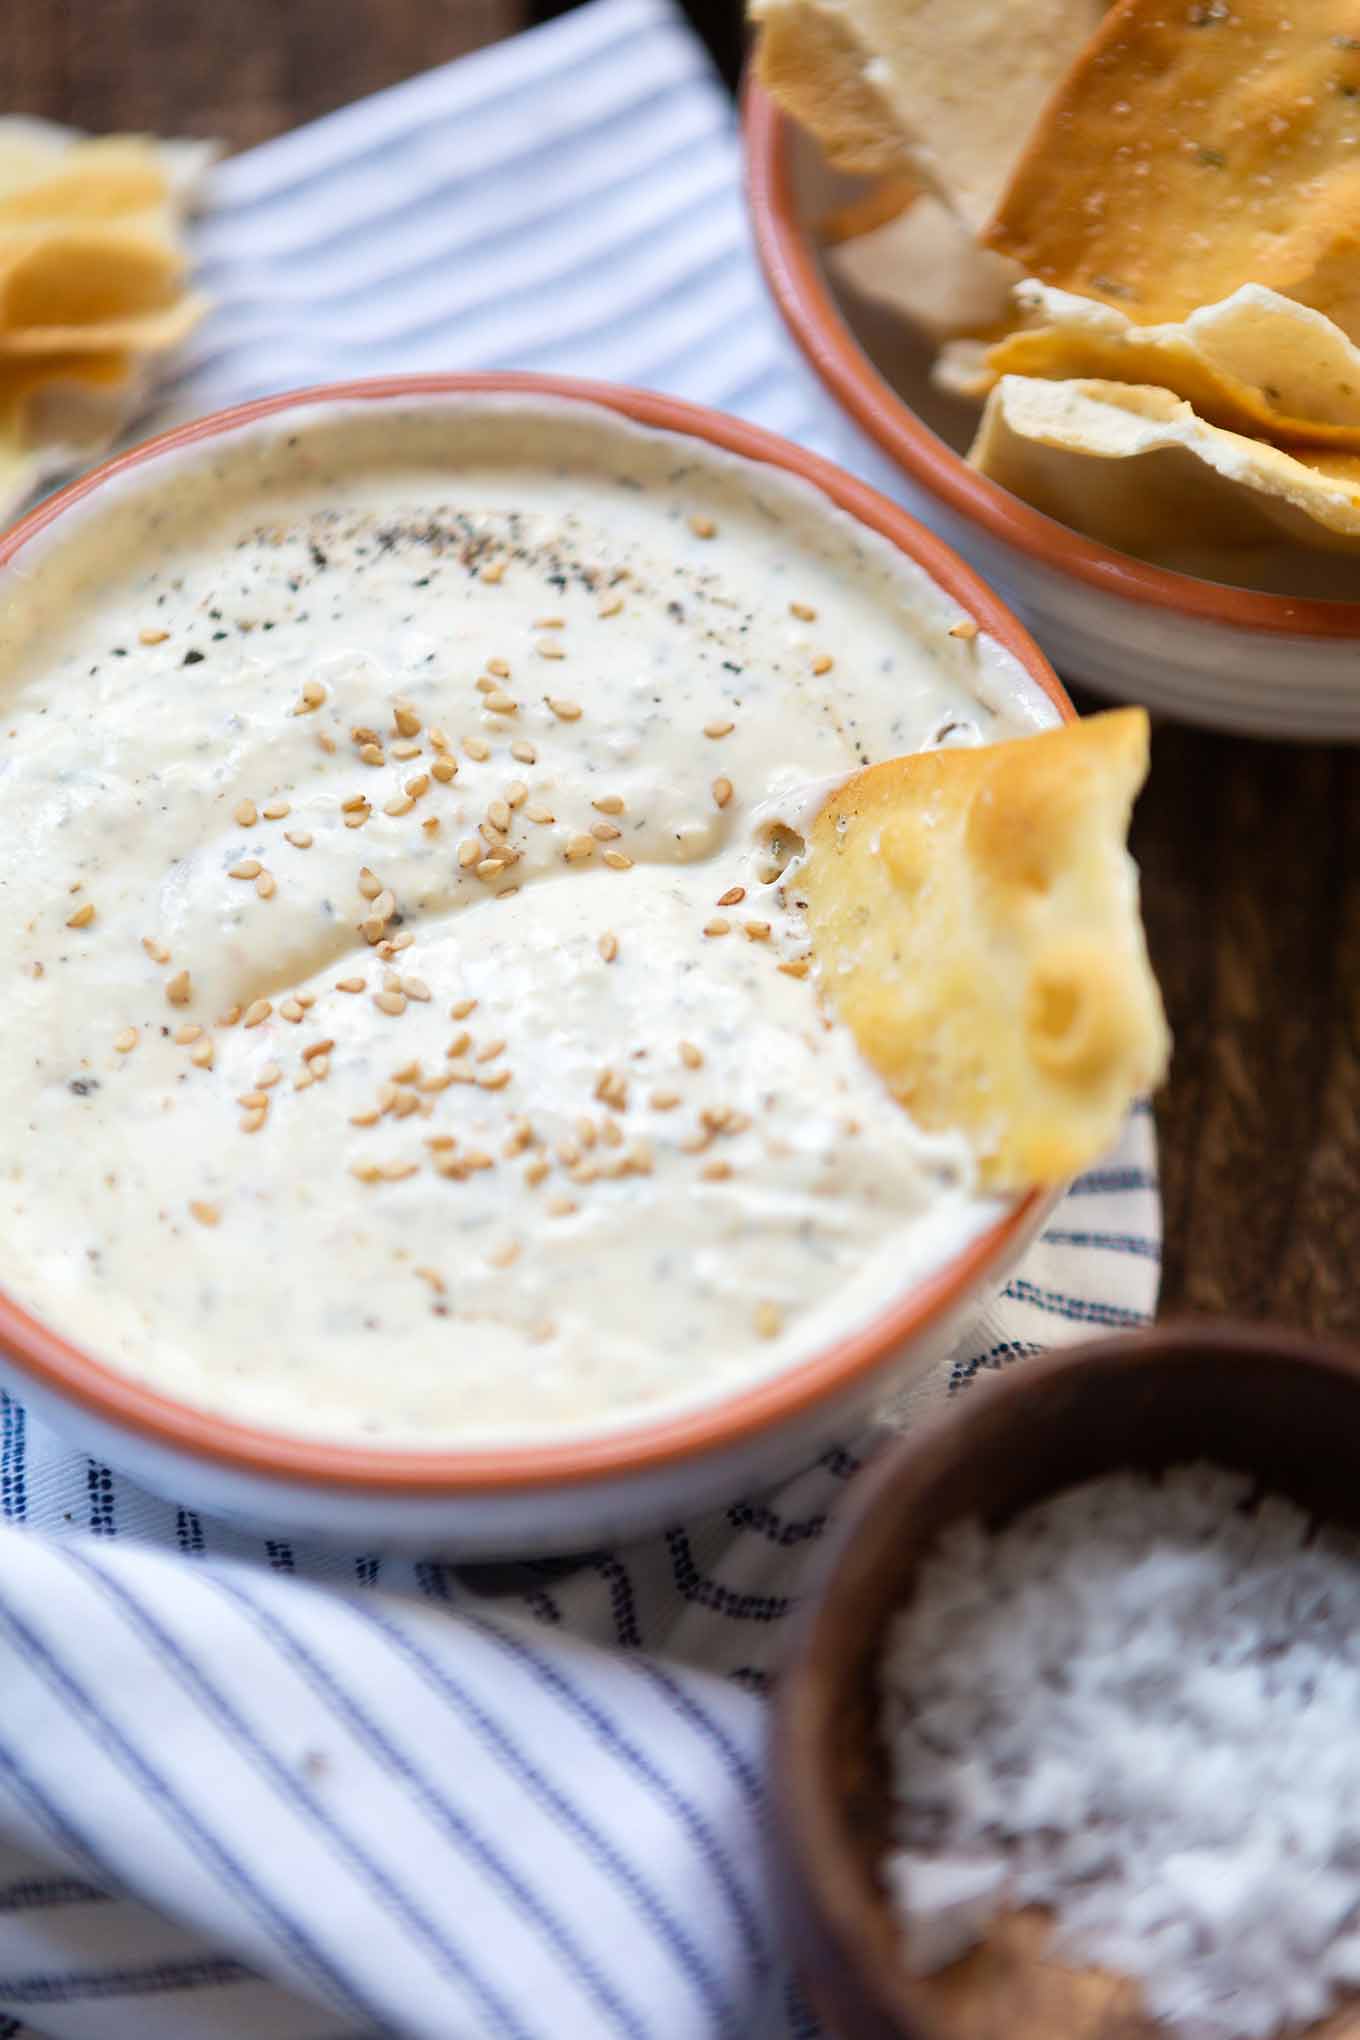 Griechischer Joghurt-Feta-Dip mit Zitrone. Dieses ultra cremige 10-Minuten Rezept ist perfekt für Grillen & Parties und kommt immer gut an, das müsst ihr probieren! - Kochkarussell.com #diprezept #grillen #schnellundeinfach #sommerrezept